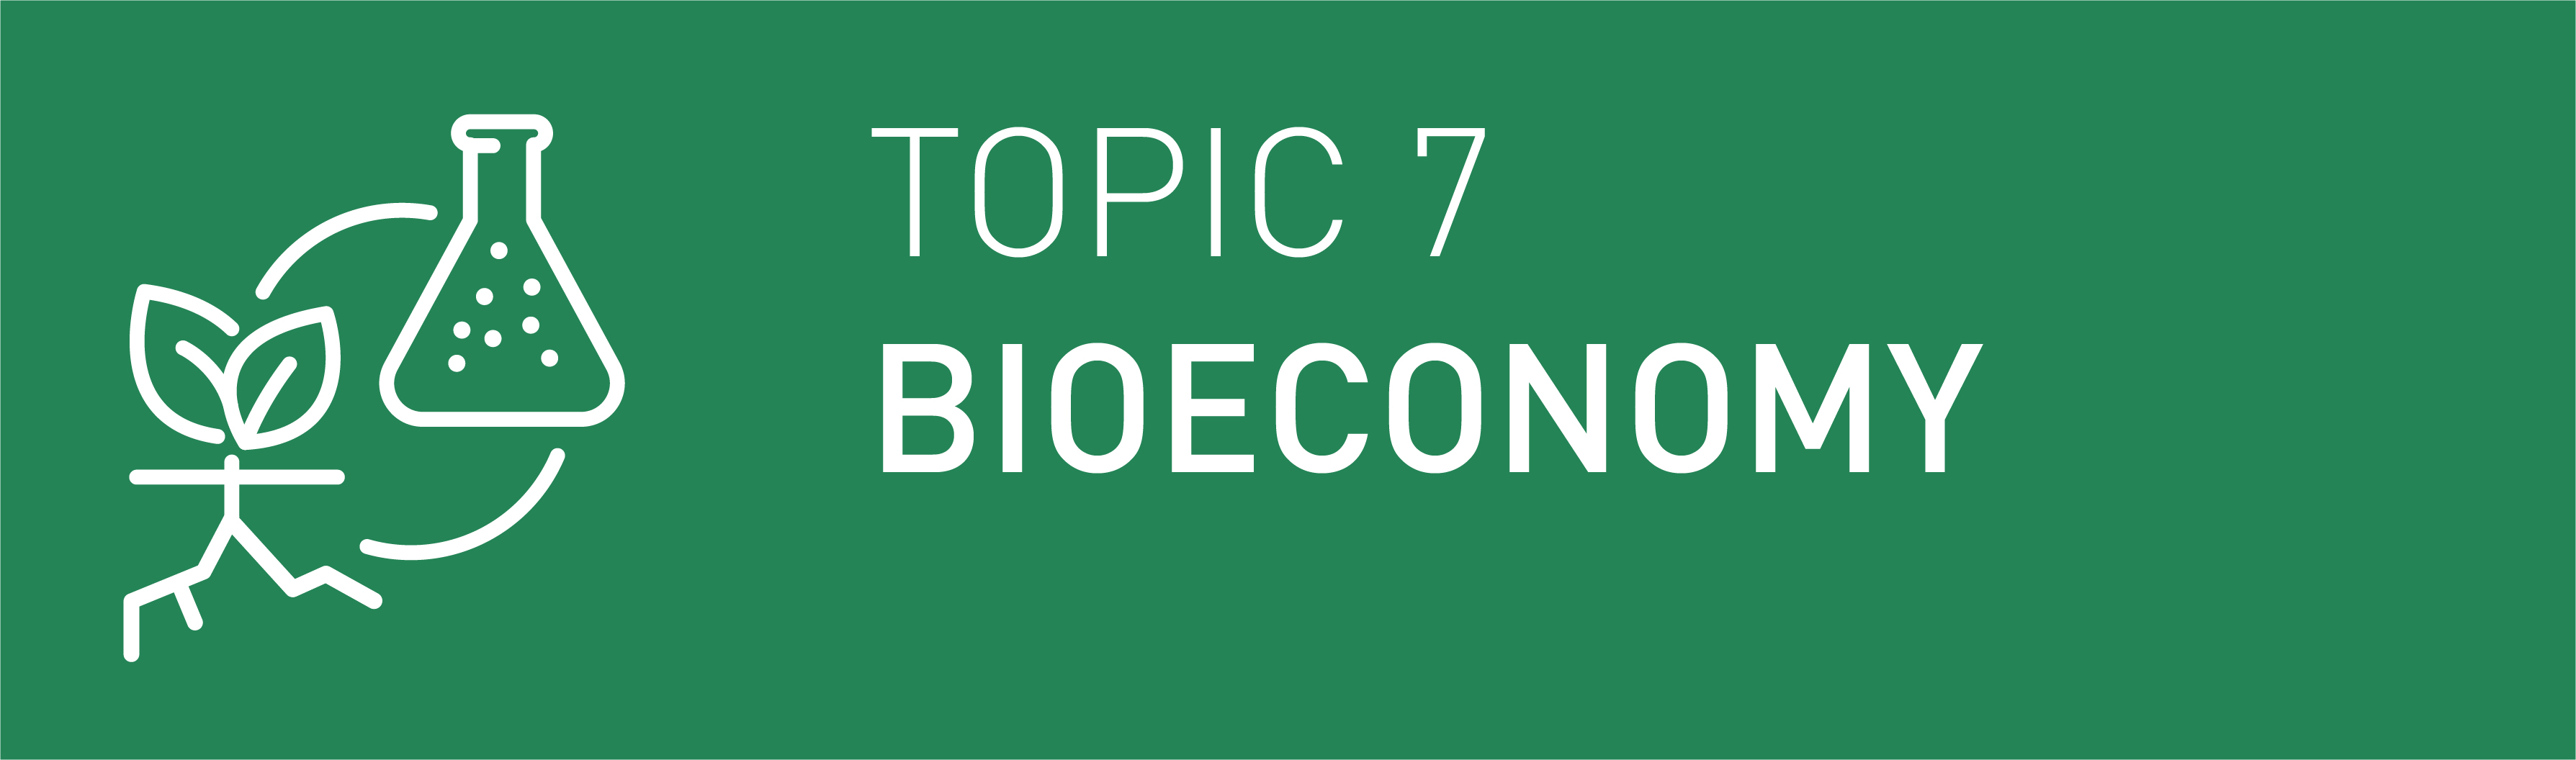 Icon Topic 7 Bioeconomy